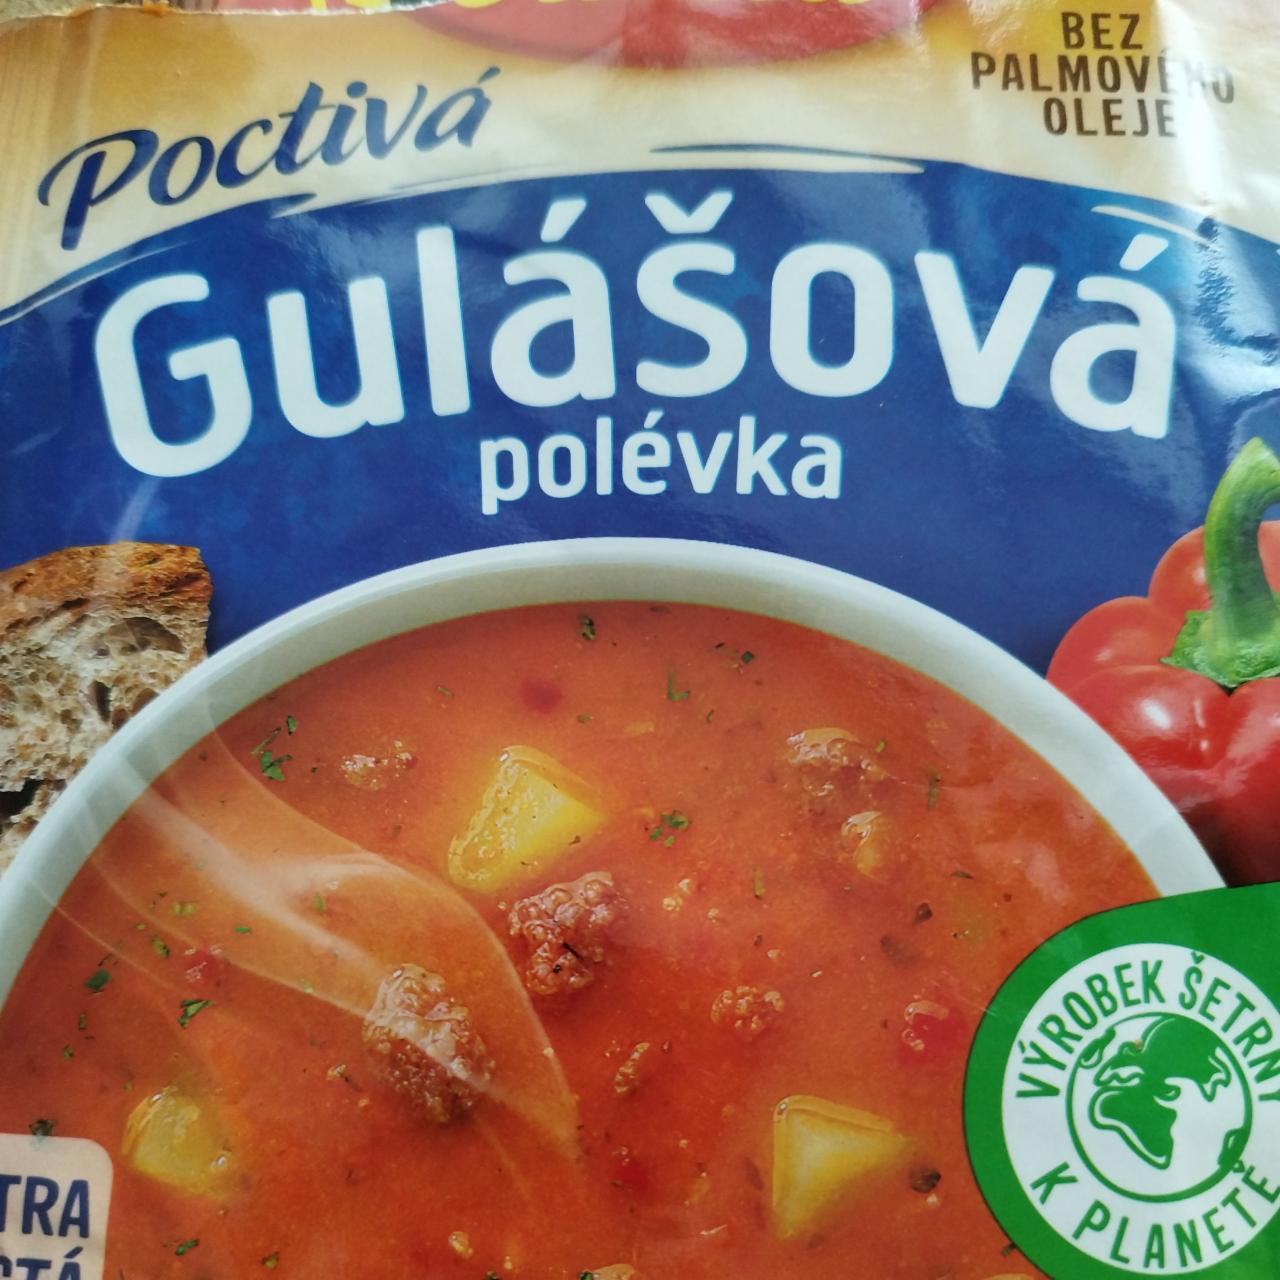 Fotografie - Poctivá polévka Gulášová Vitana